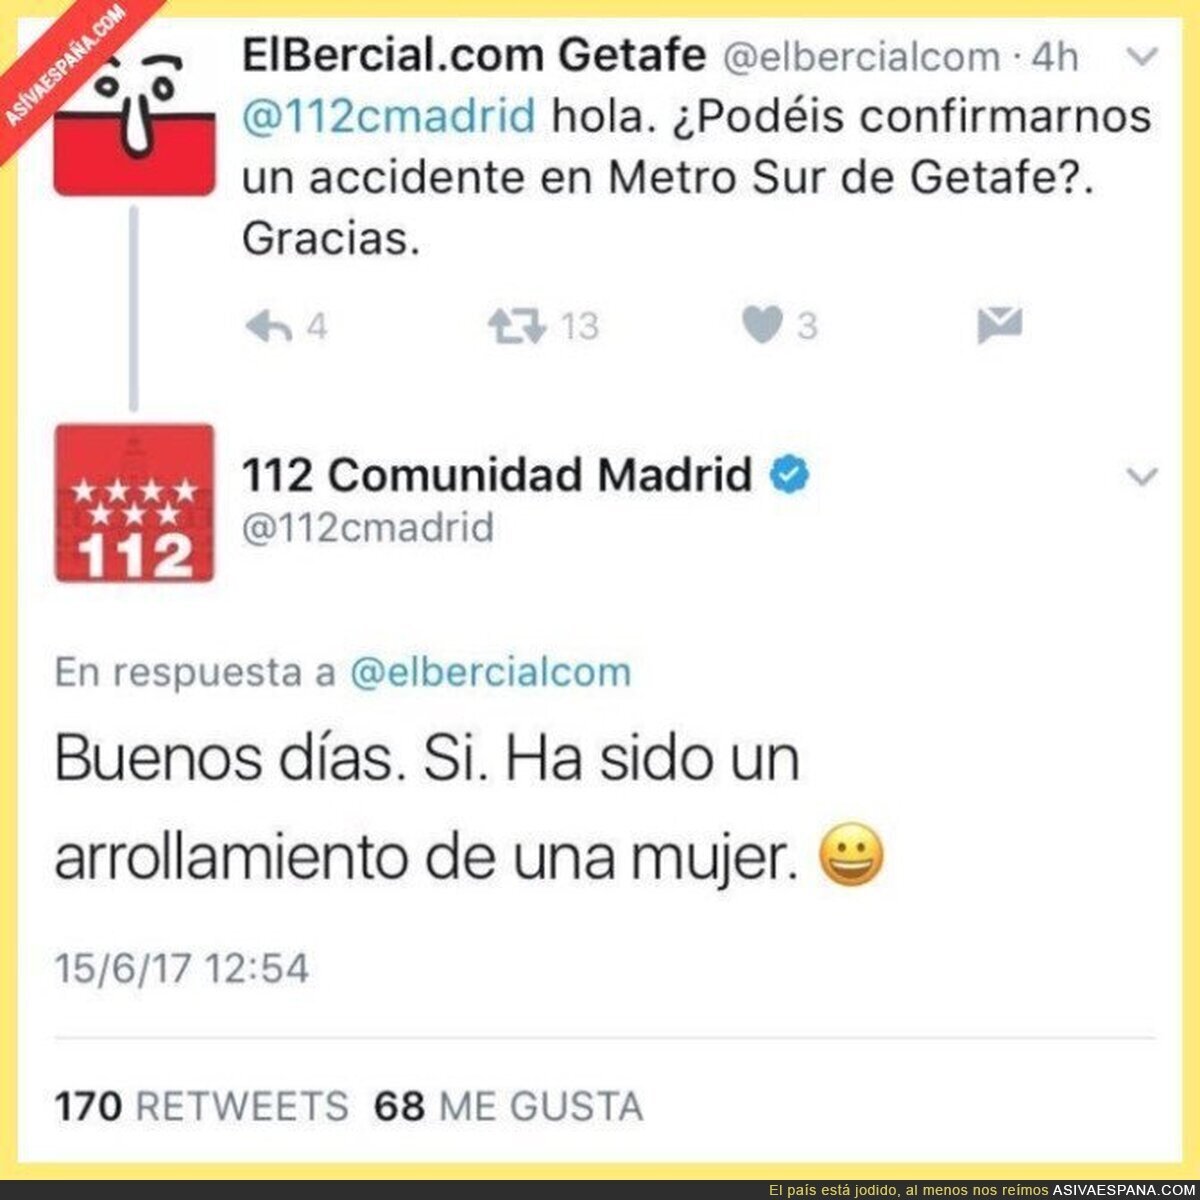 El CM del 112 en Madrid la lía con un emoticono poco apropiado al responder a esta persona